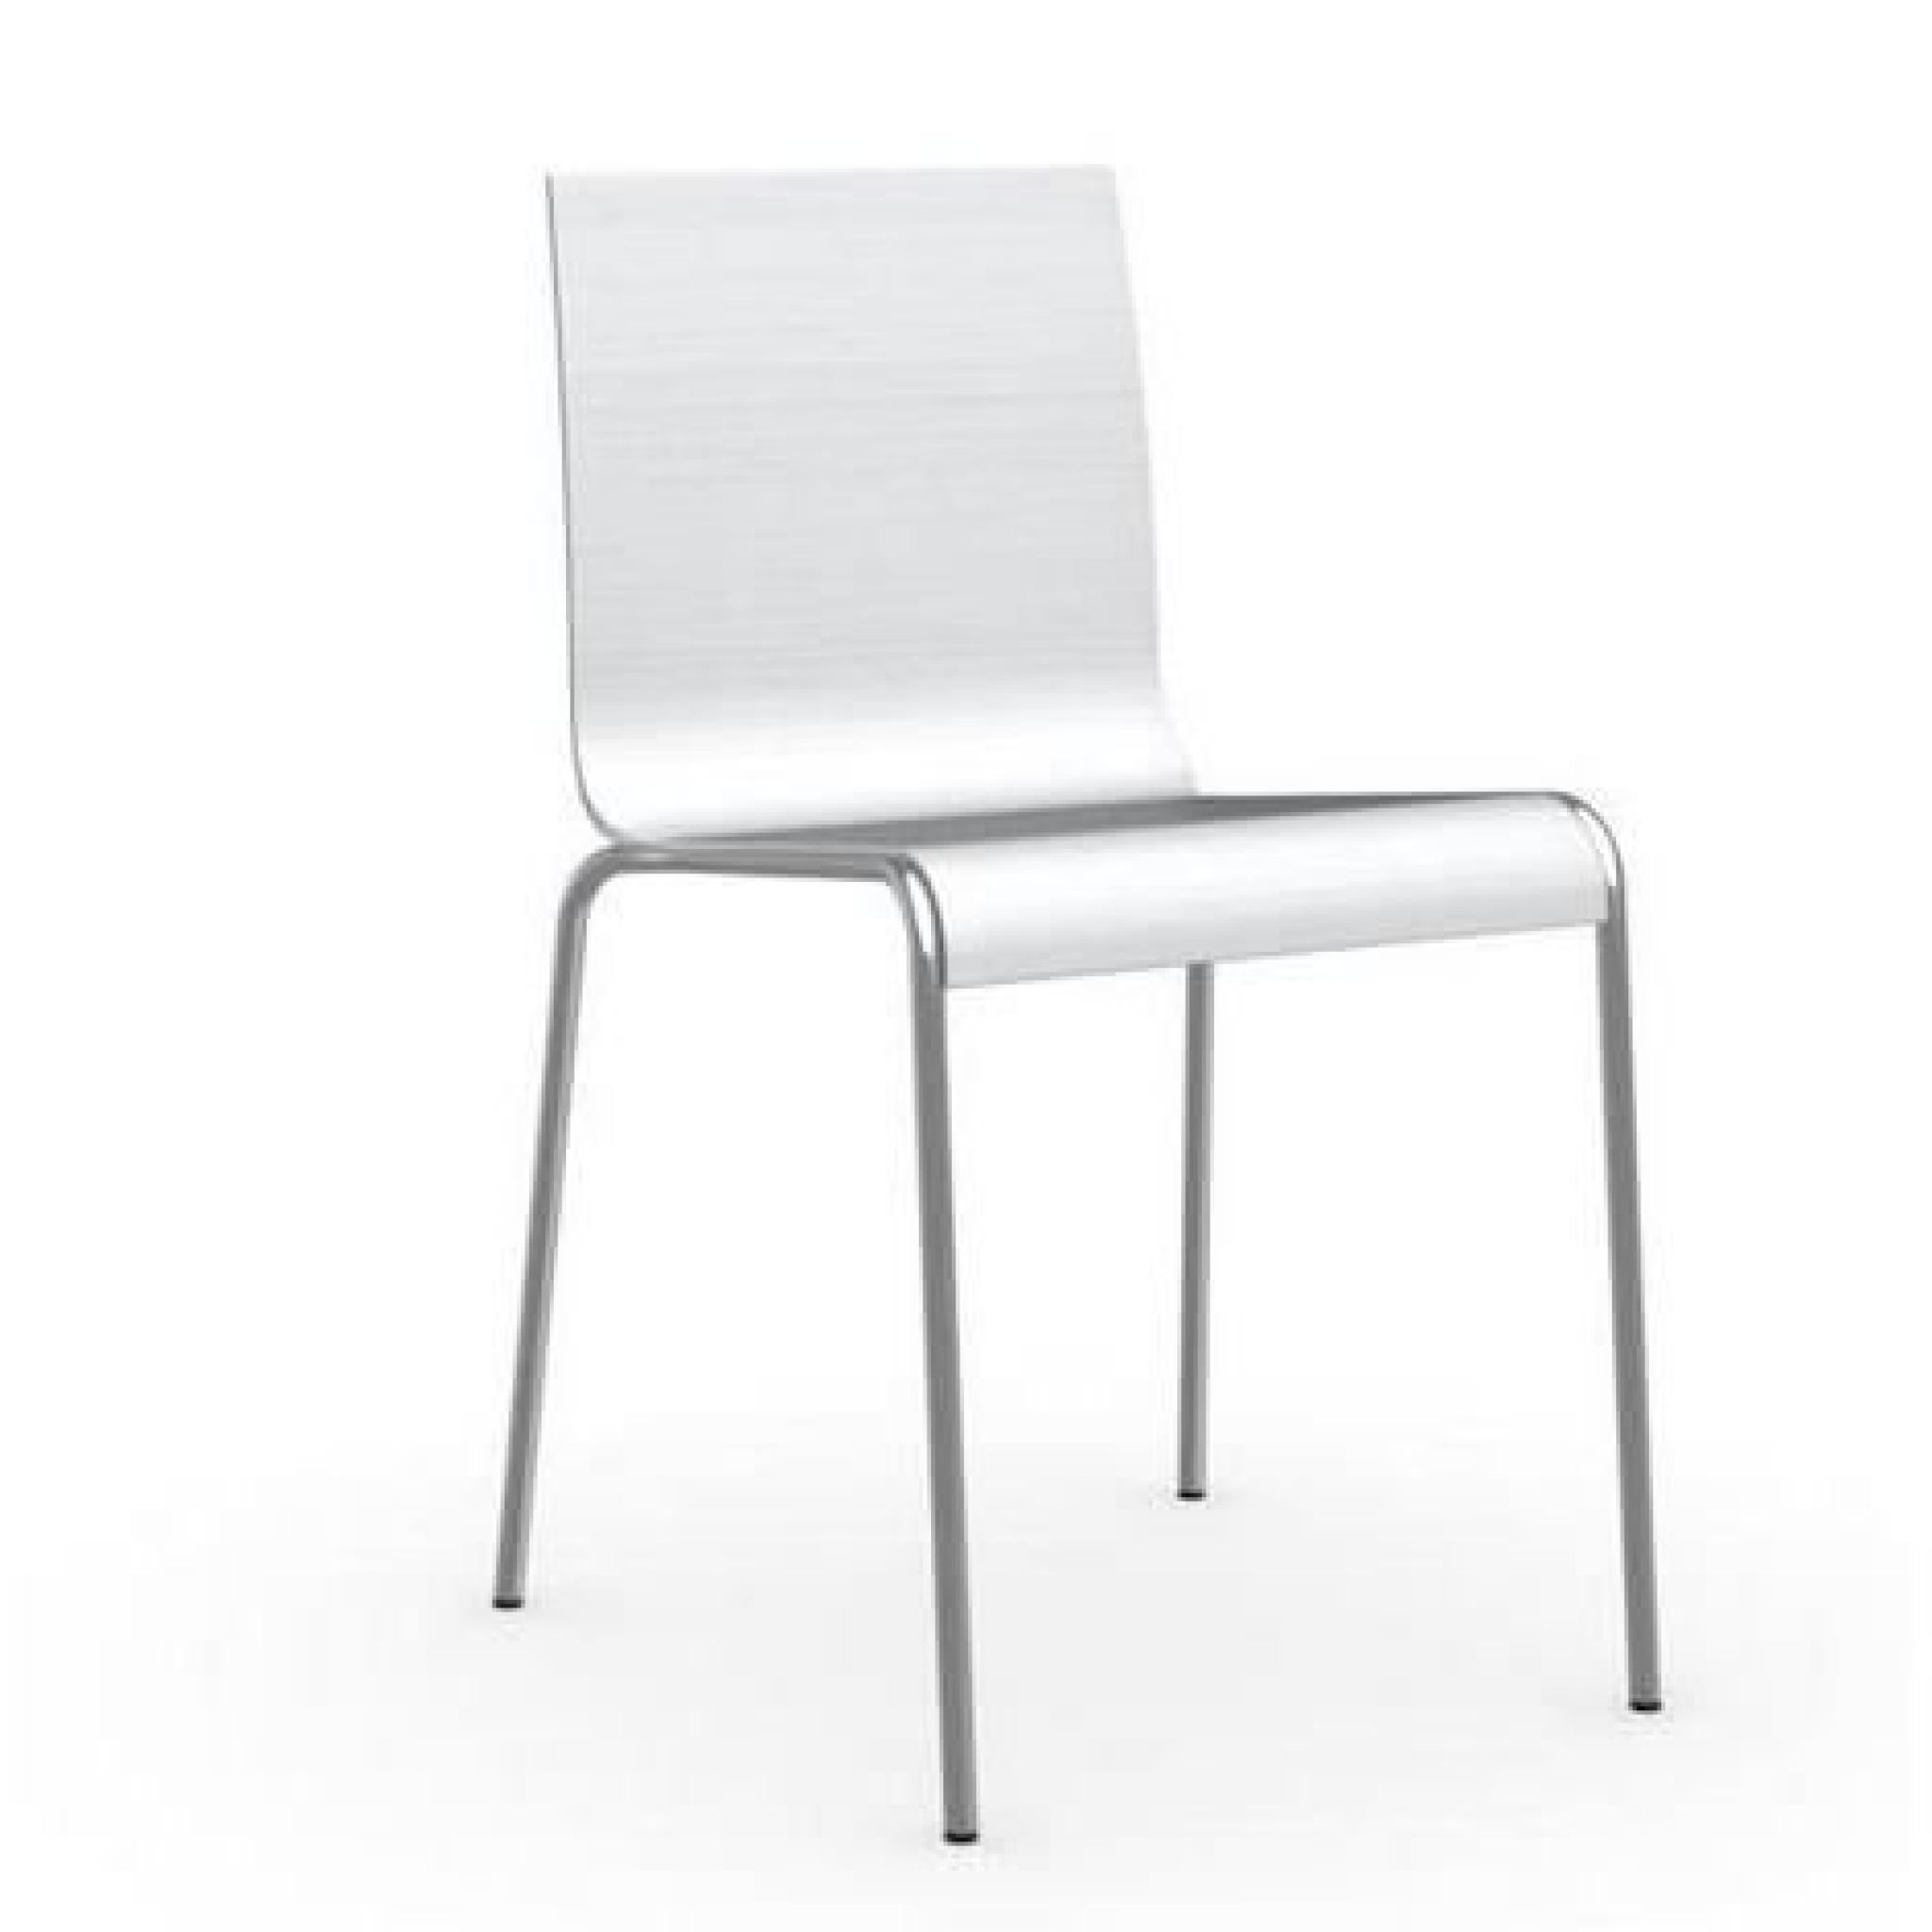 Chaise ONLINE en chêne blanc brossé et acier chromé de calligaris